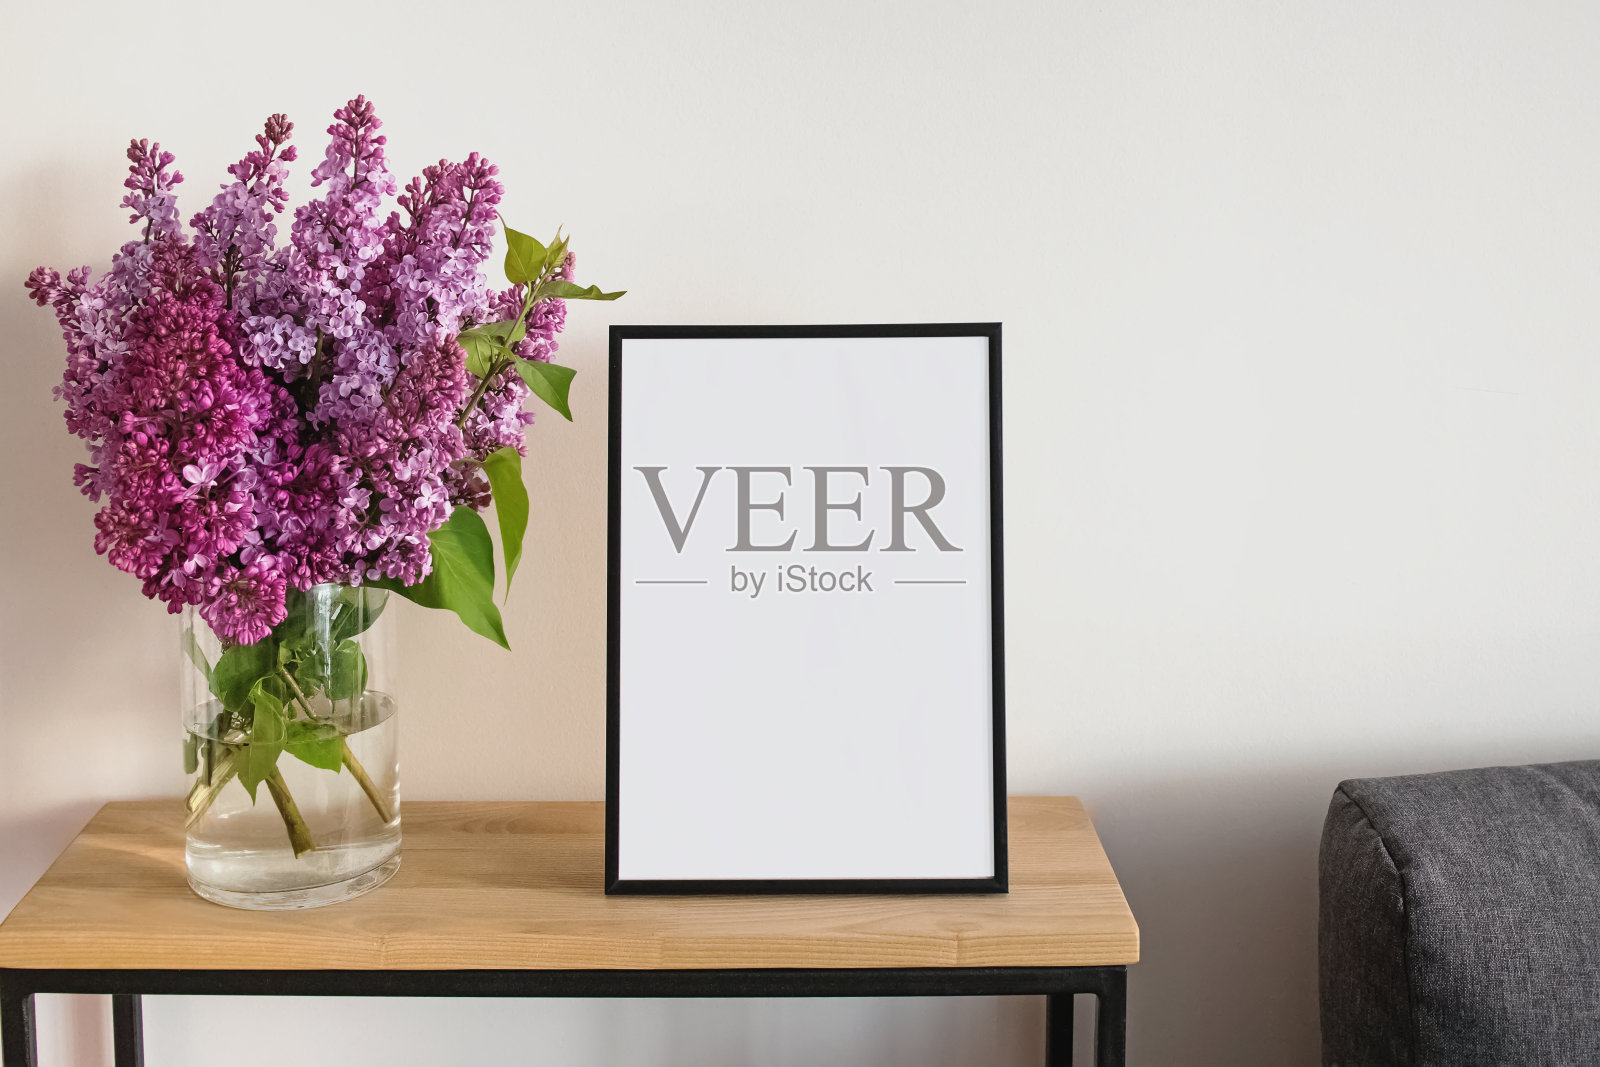 空框和花瓶里的紫丁香花束照片摄影图片